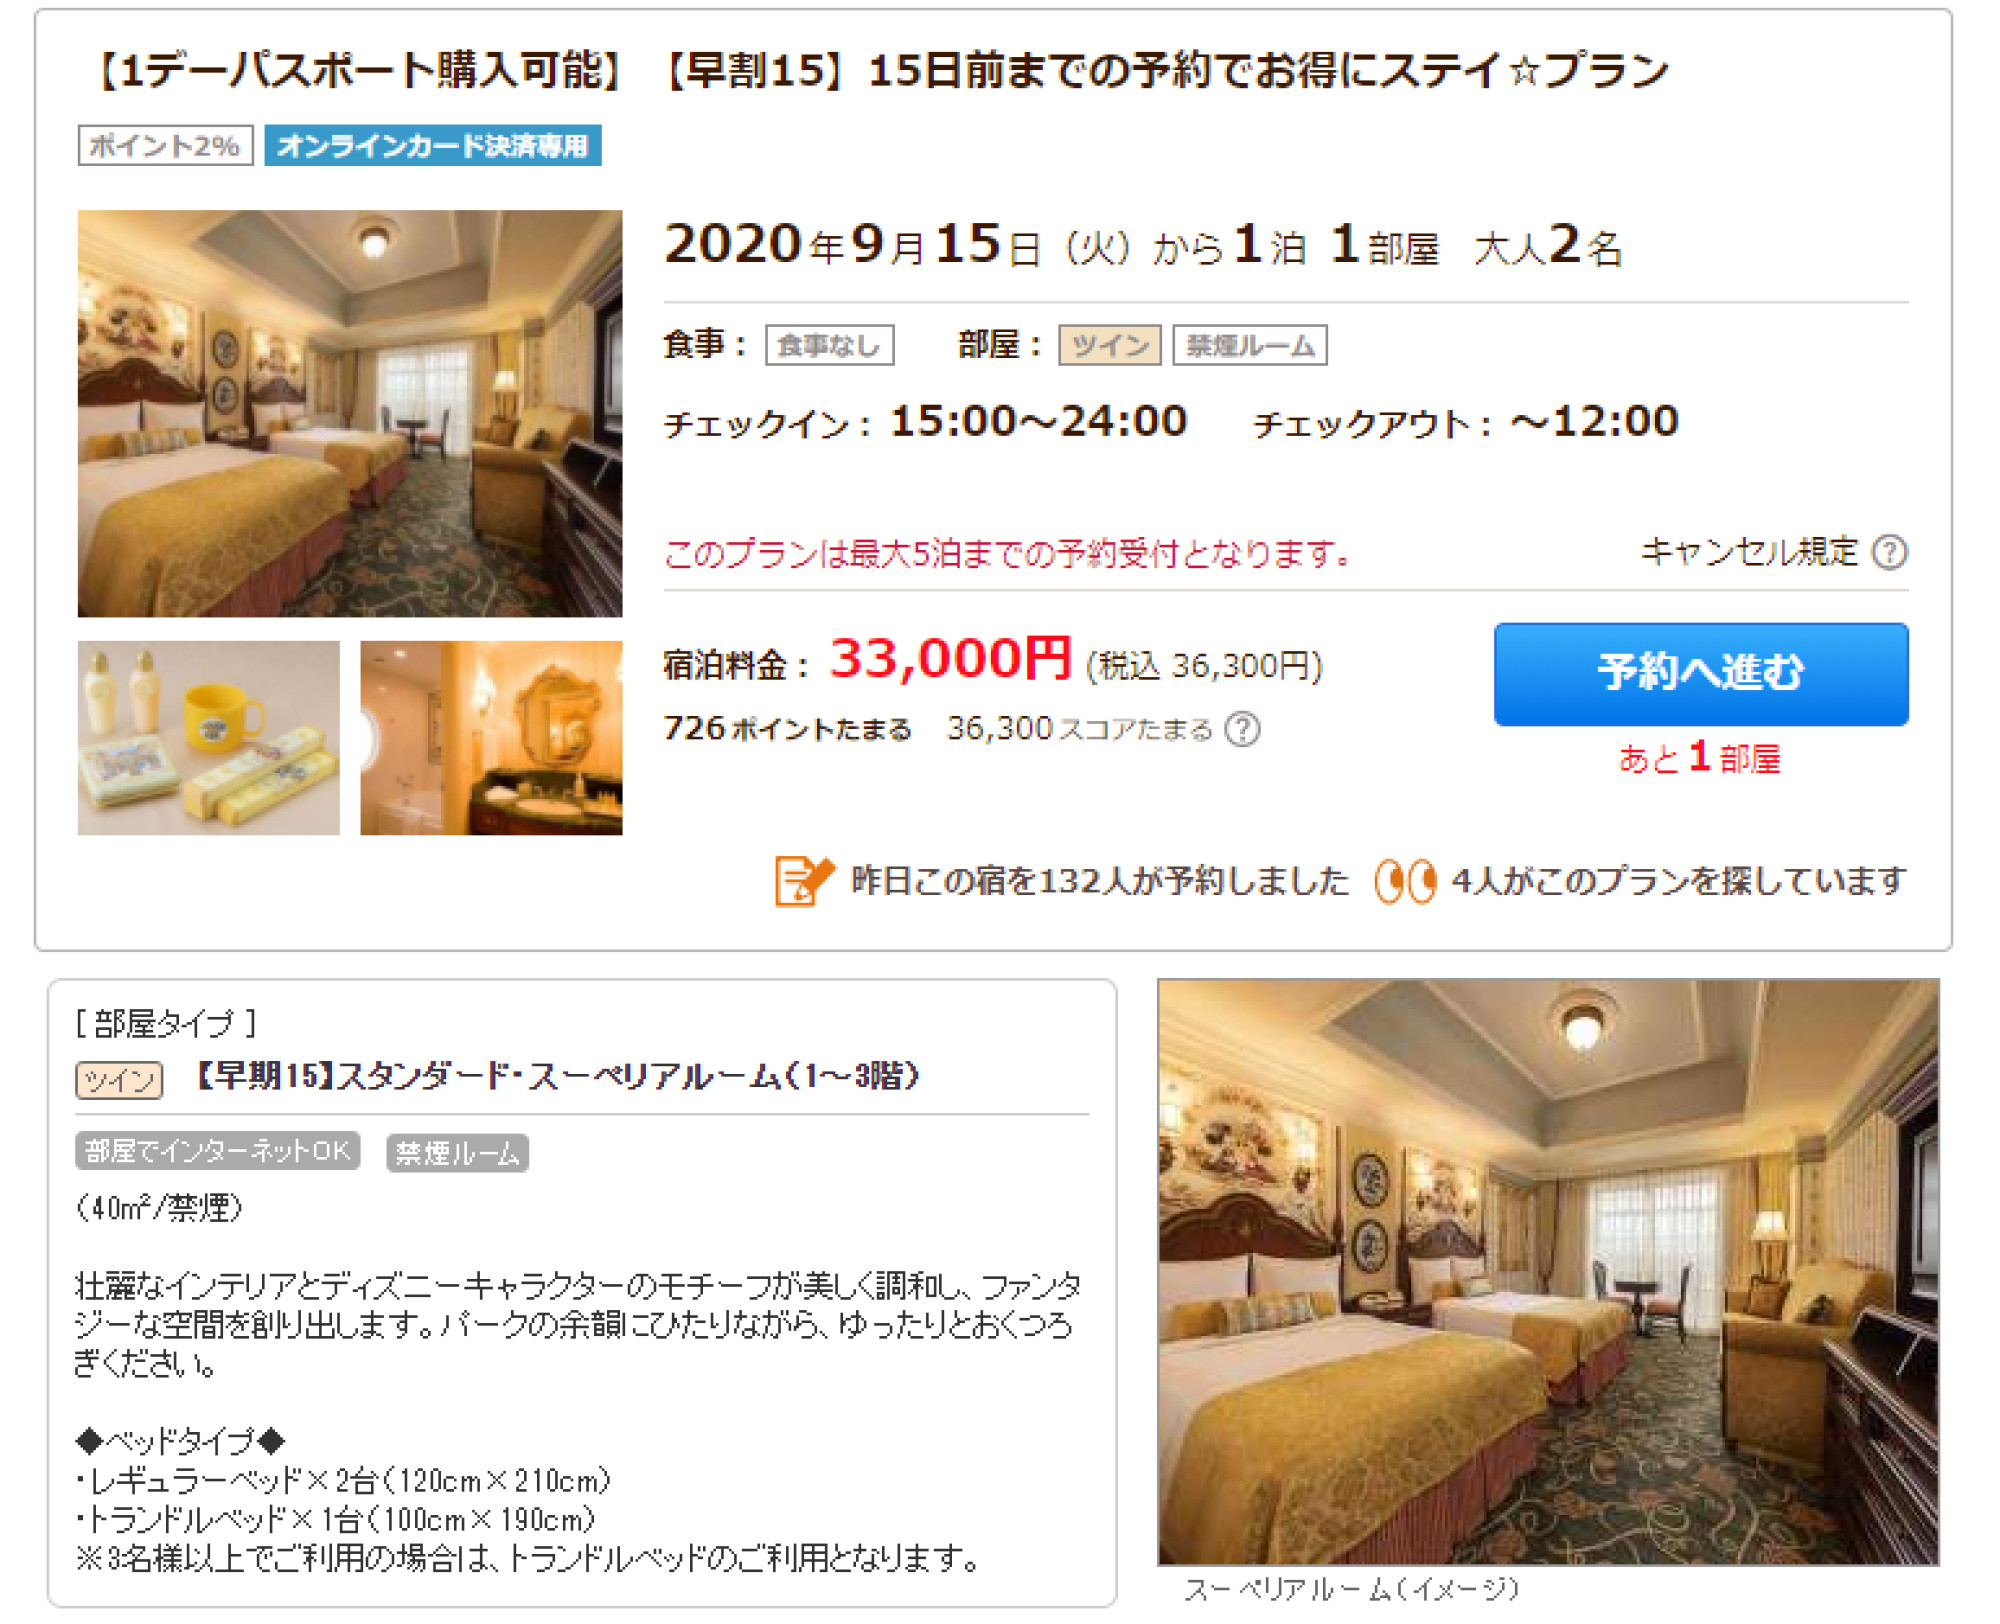 東京ディズニーランドホテルをじゃらんで予約 キャステル Castel ディズニー情報